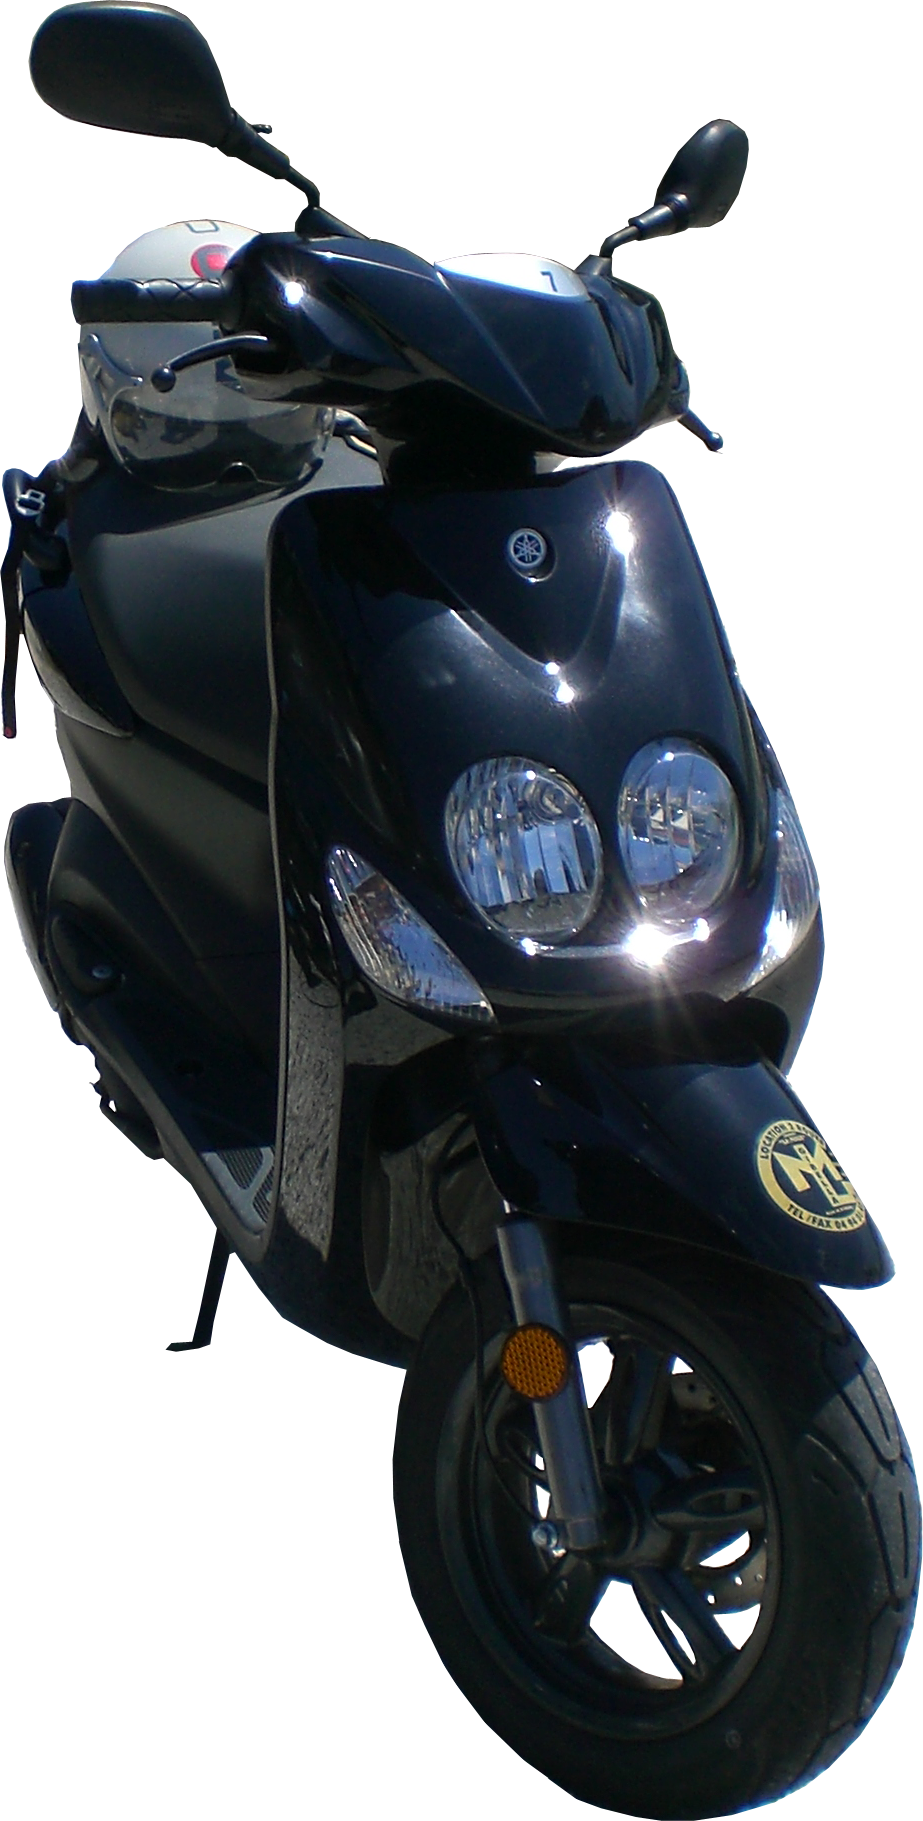 Toutes Pièces scooter Neos Ovetto Yamaha Mbk 50cc 2 temps - Équipement moto